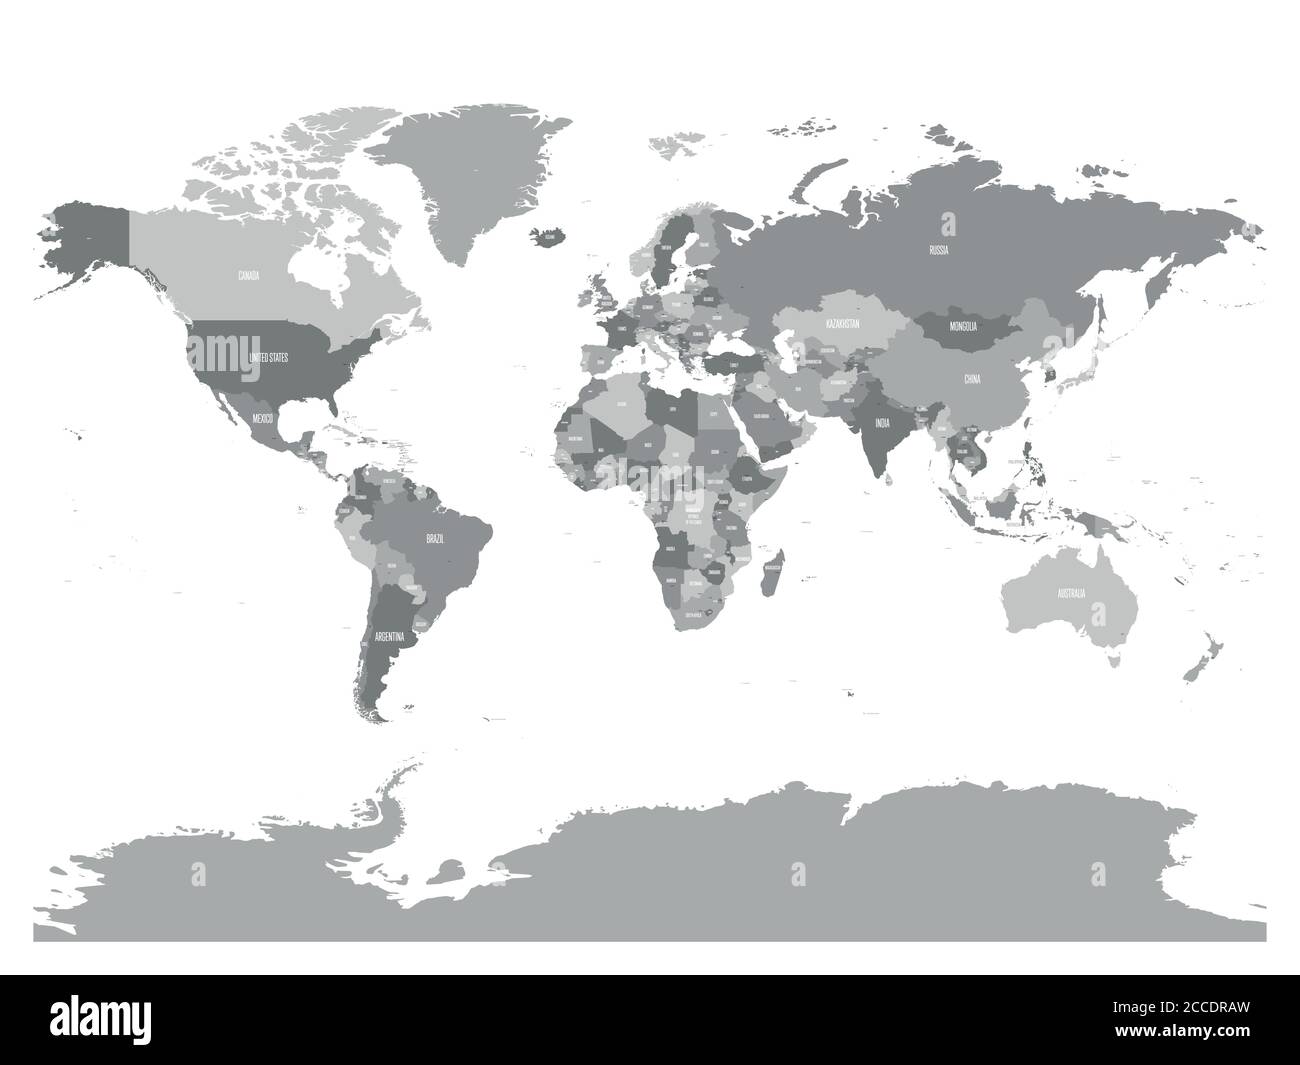 Mappa politica del mondo con nomi di paesi e capitali. Mappa vettoriale dei grigi. Illustrazione Vettoriale